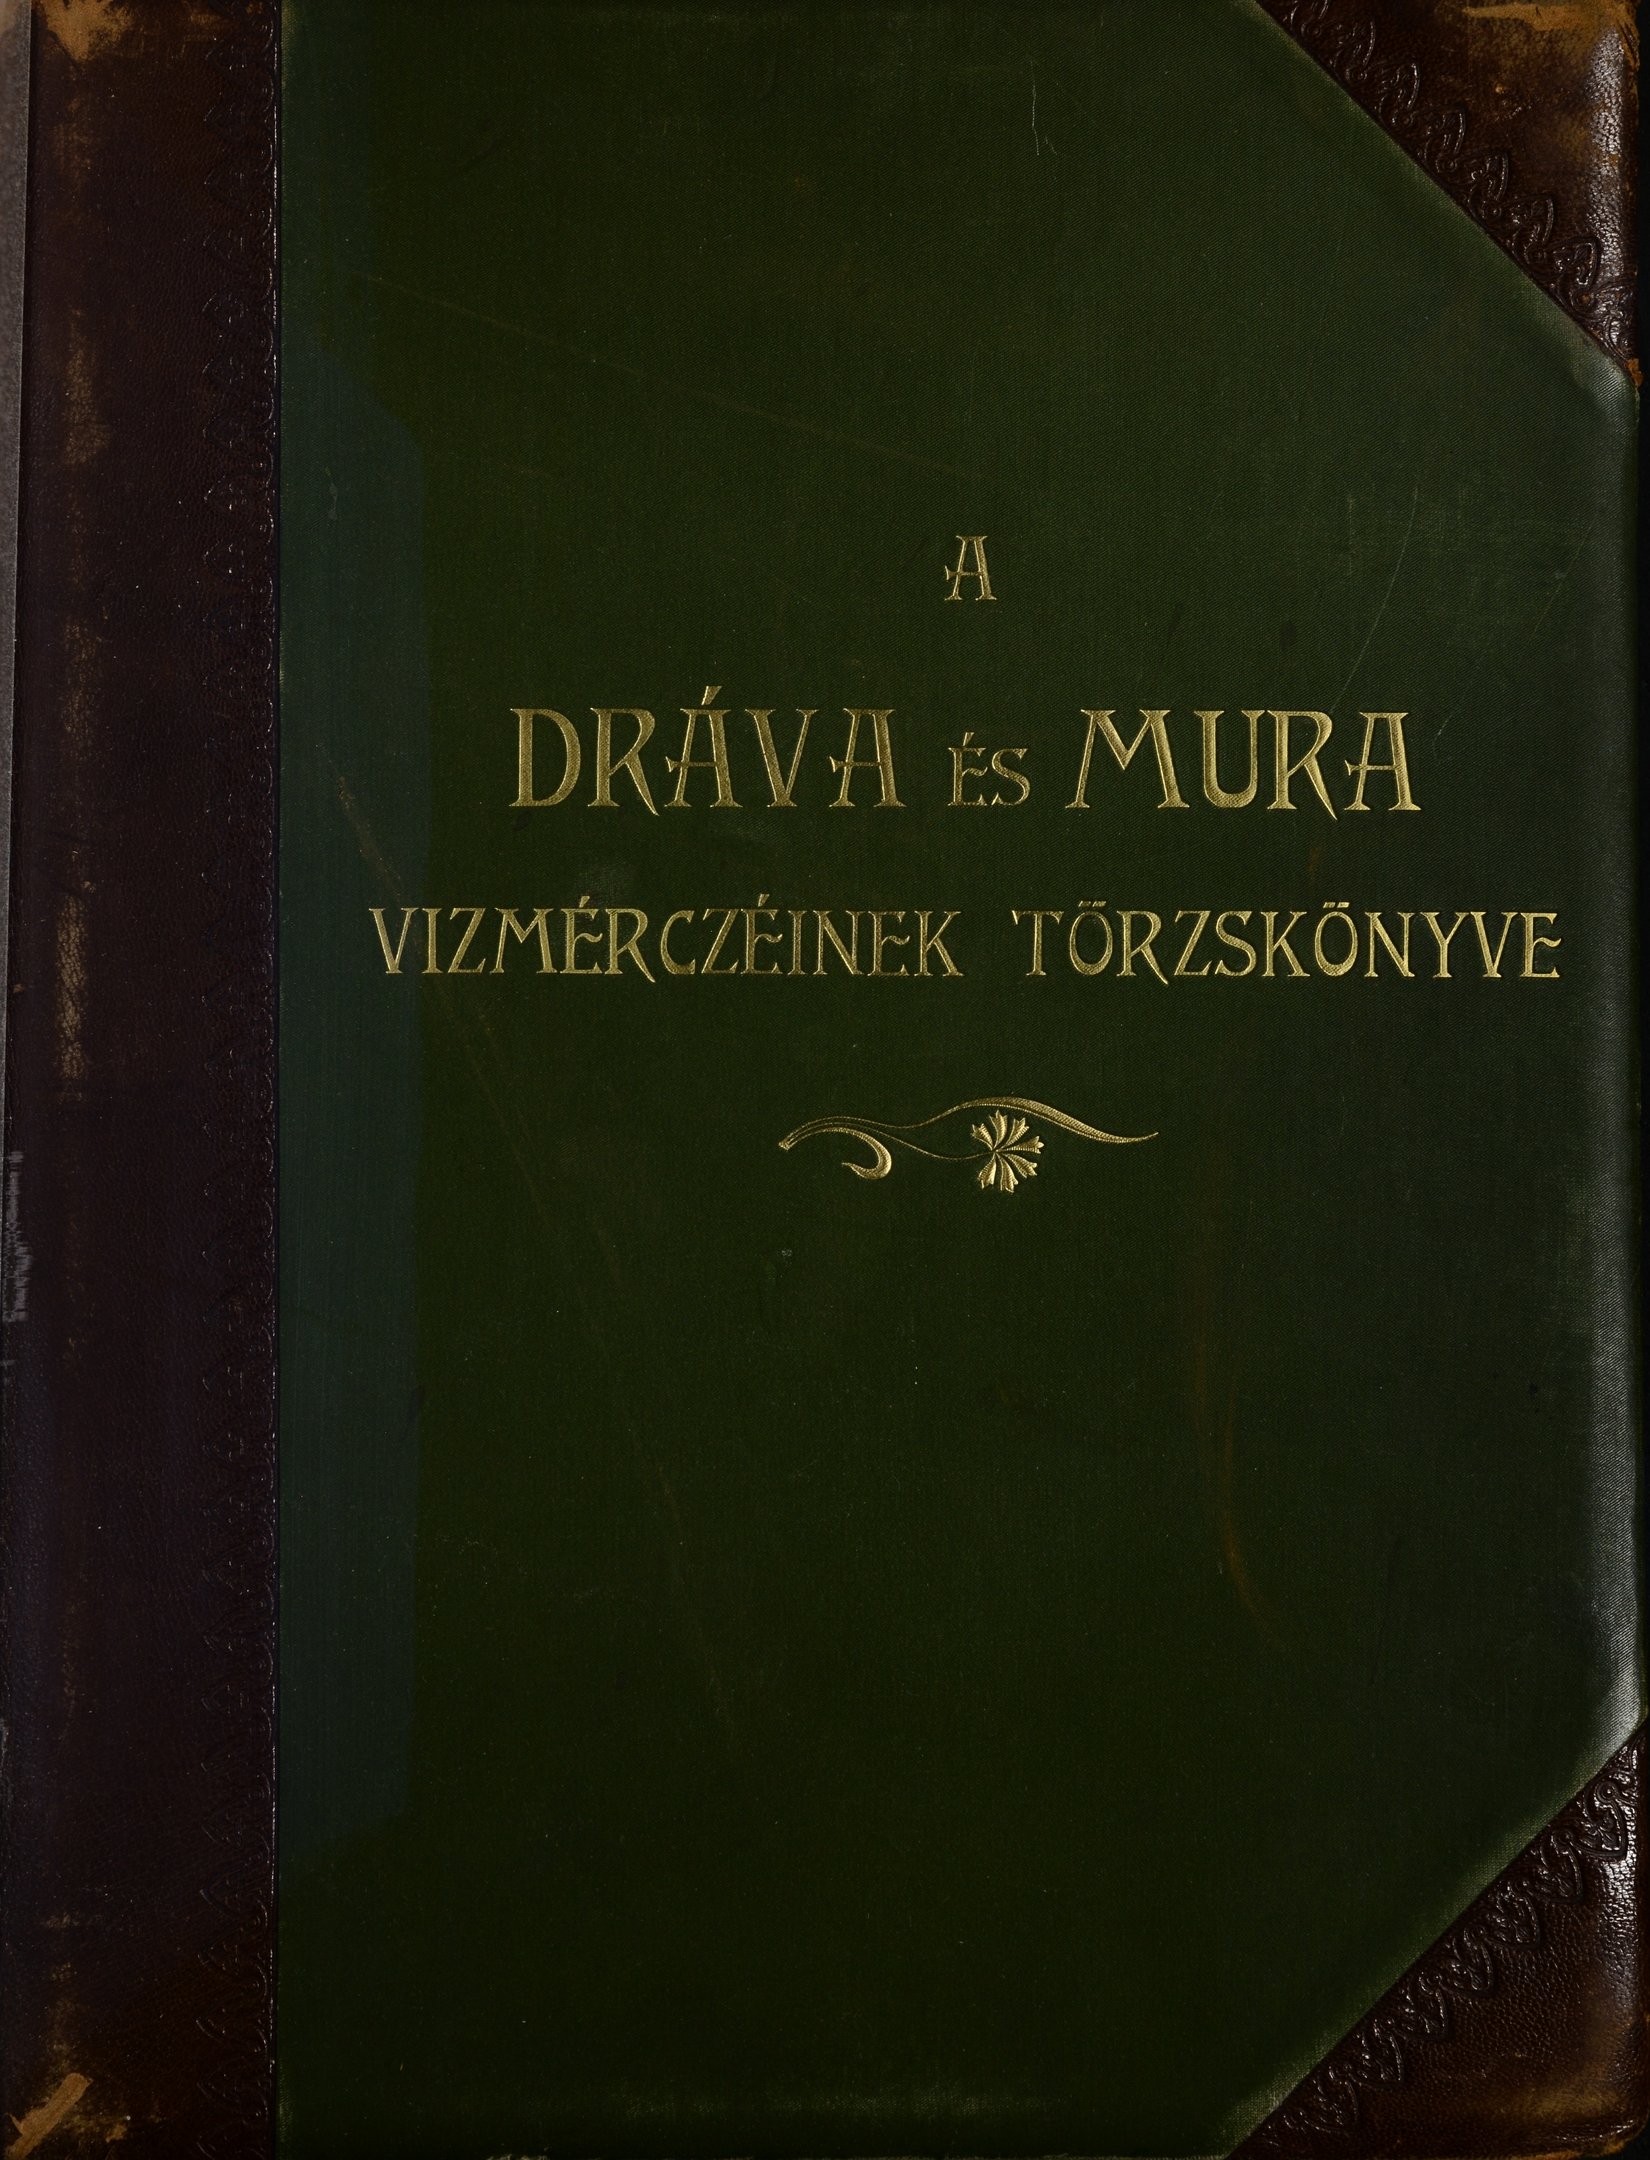 A Dráva és a Mura vízmércéinek törzskönyve (Magyar Környezetvédelmi és Vízügyi Múzeum - Duna Múzeum CC BY-NC-SA)